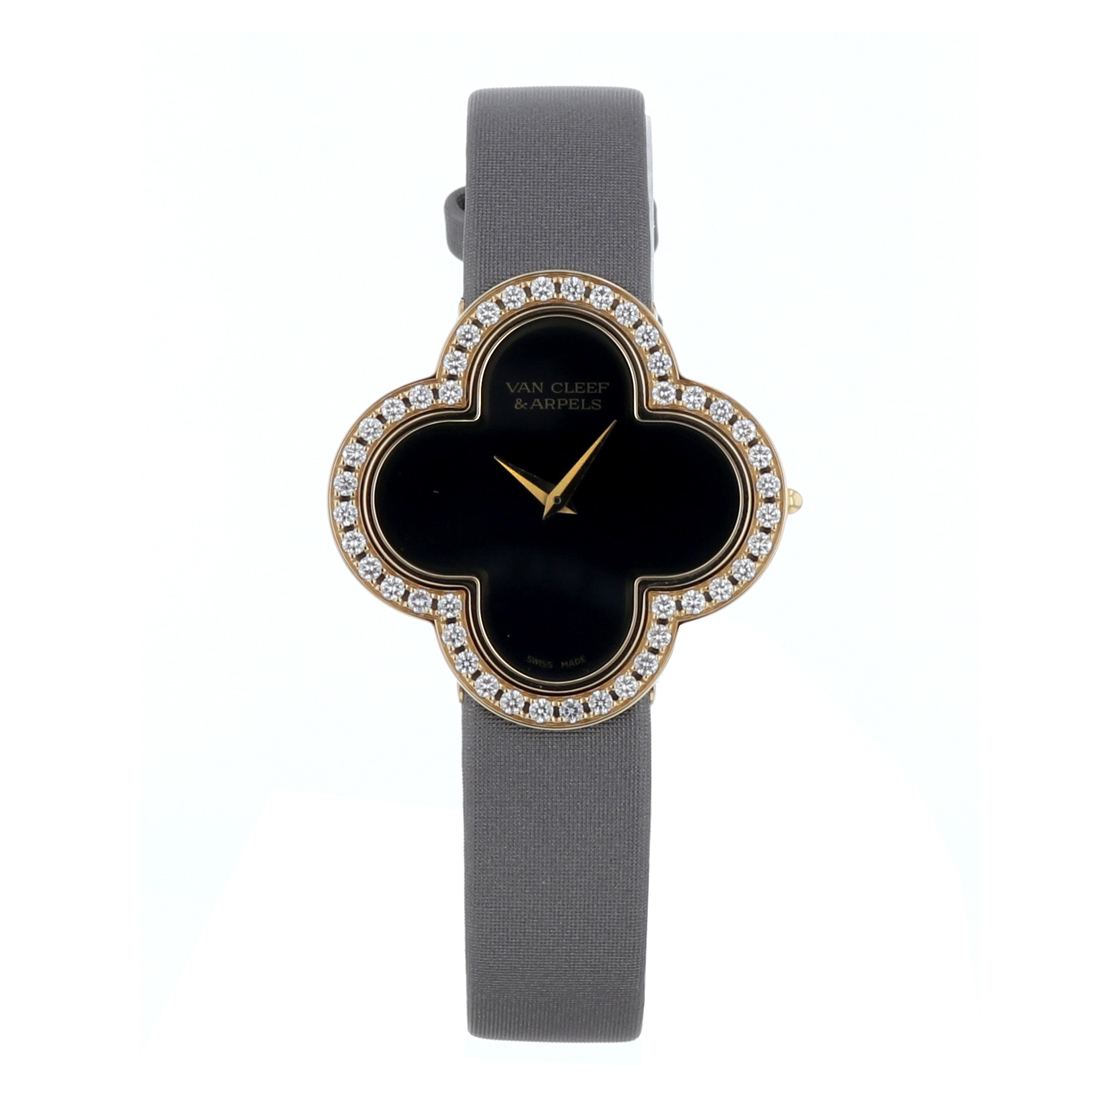 ヴァンクリーフ&アーペル- 新品・中古品のブランド腕時計 販売・買取